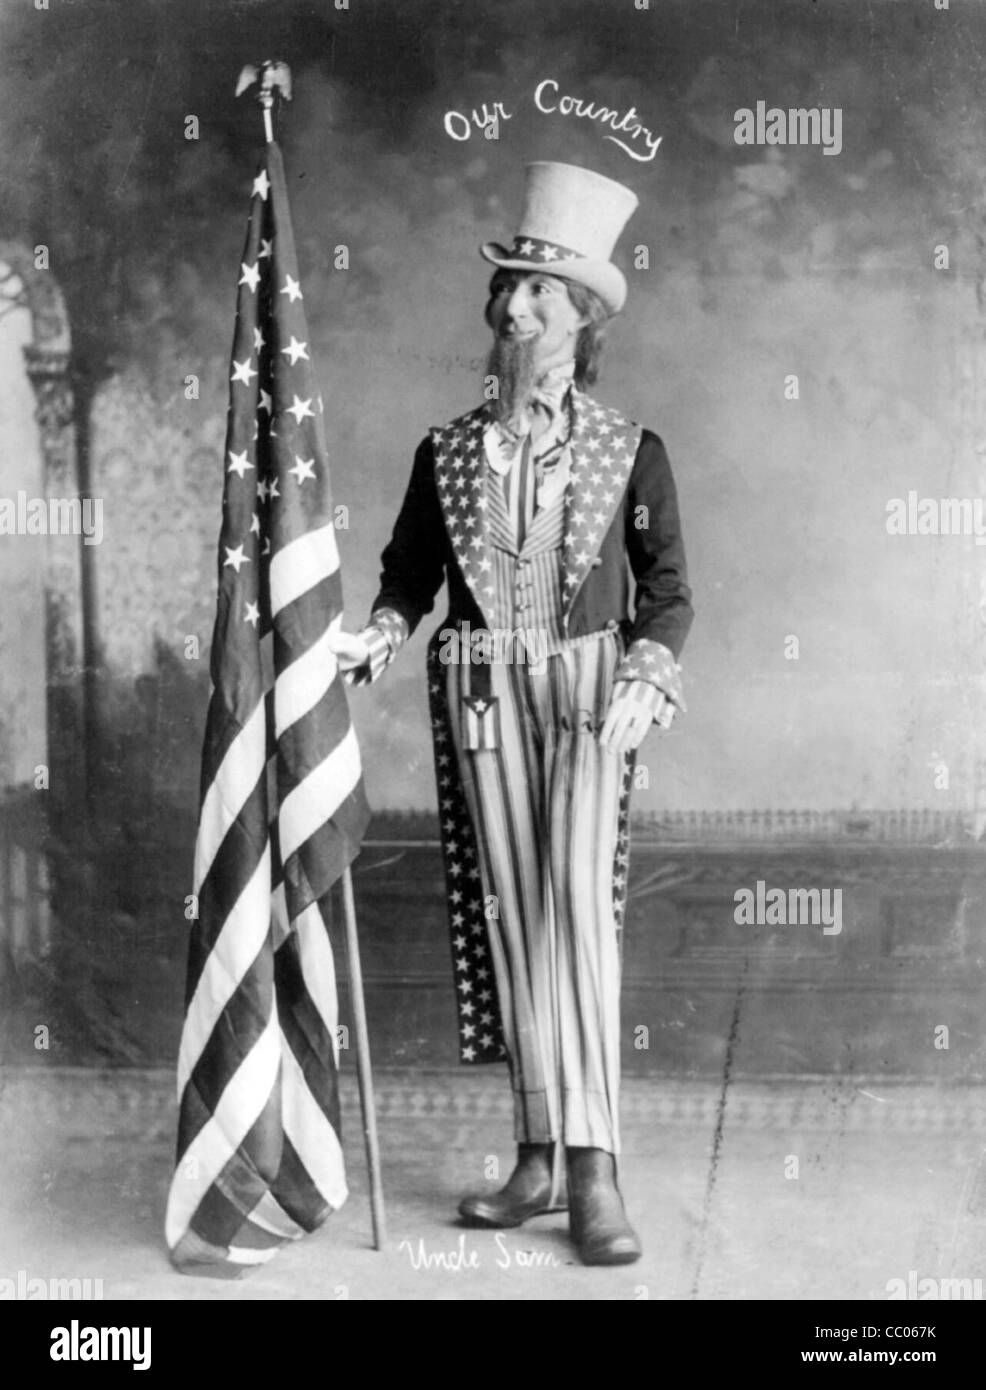 Notre pays de l'Oncle Sam - Portrait d'un mannikin habillé en tenue de l'Oncle Sam d'un drapeau. Banque D'Images